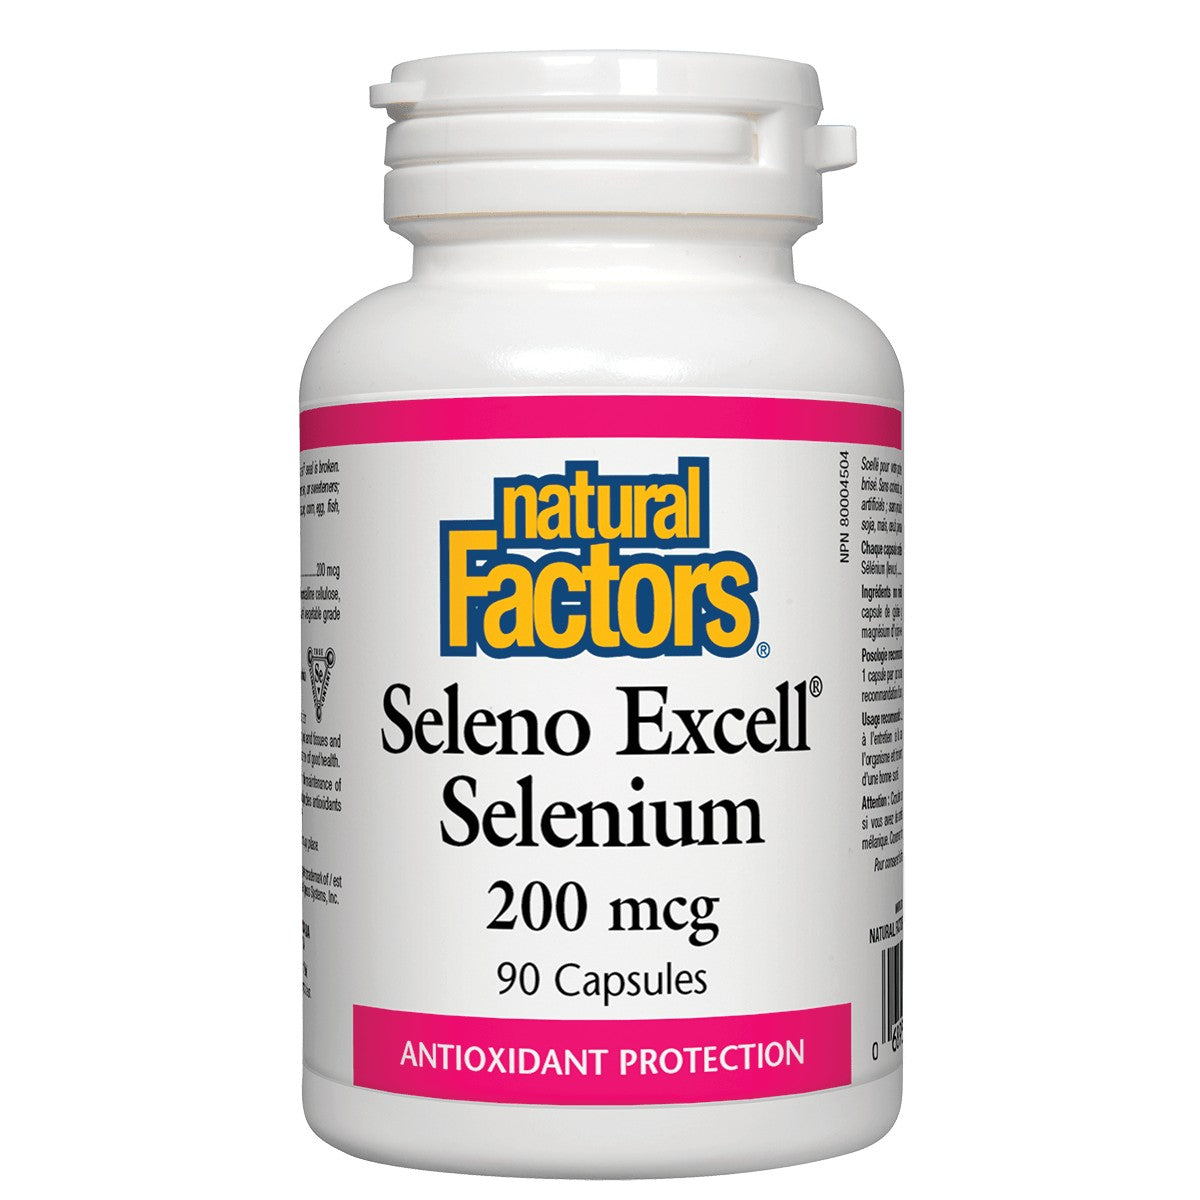 Natural Factors SelenoExcell Selenium Yeast 200 Mcg